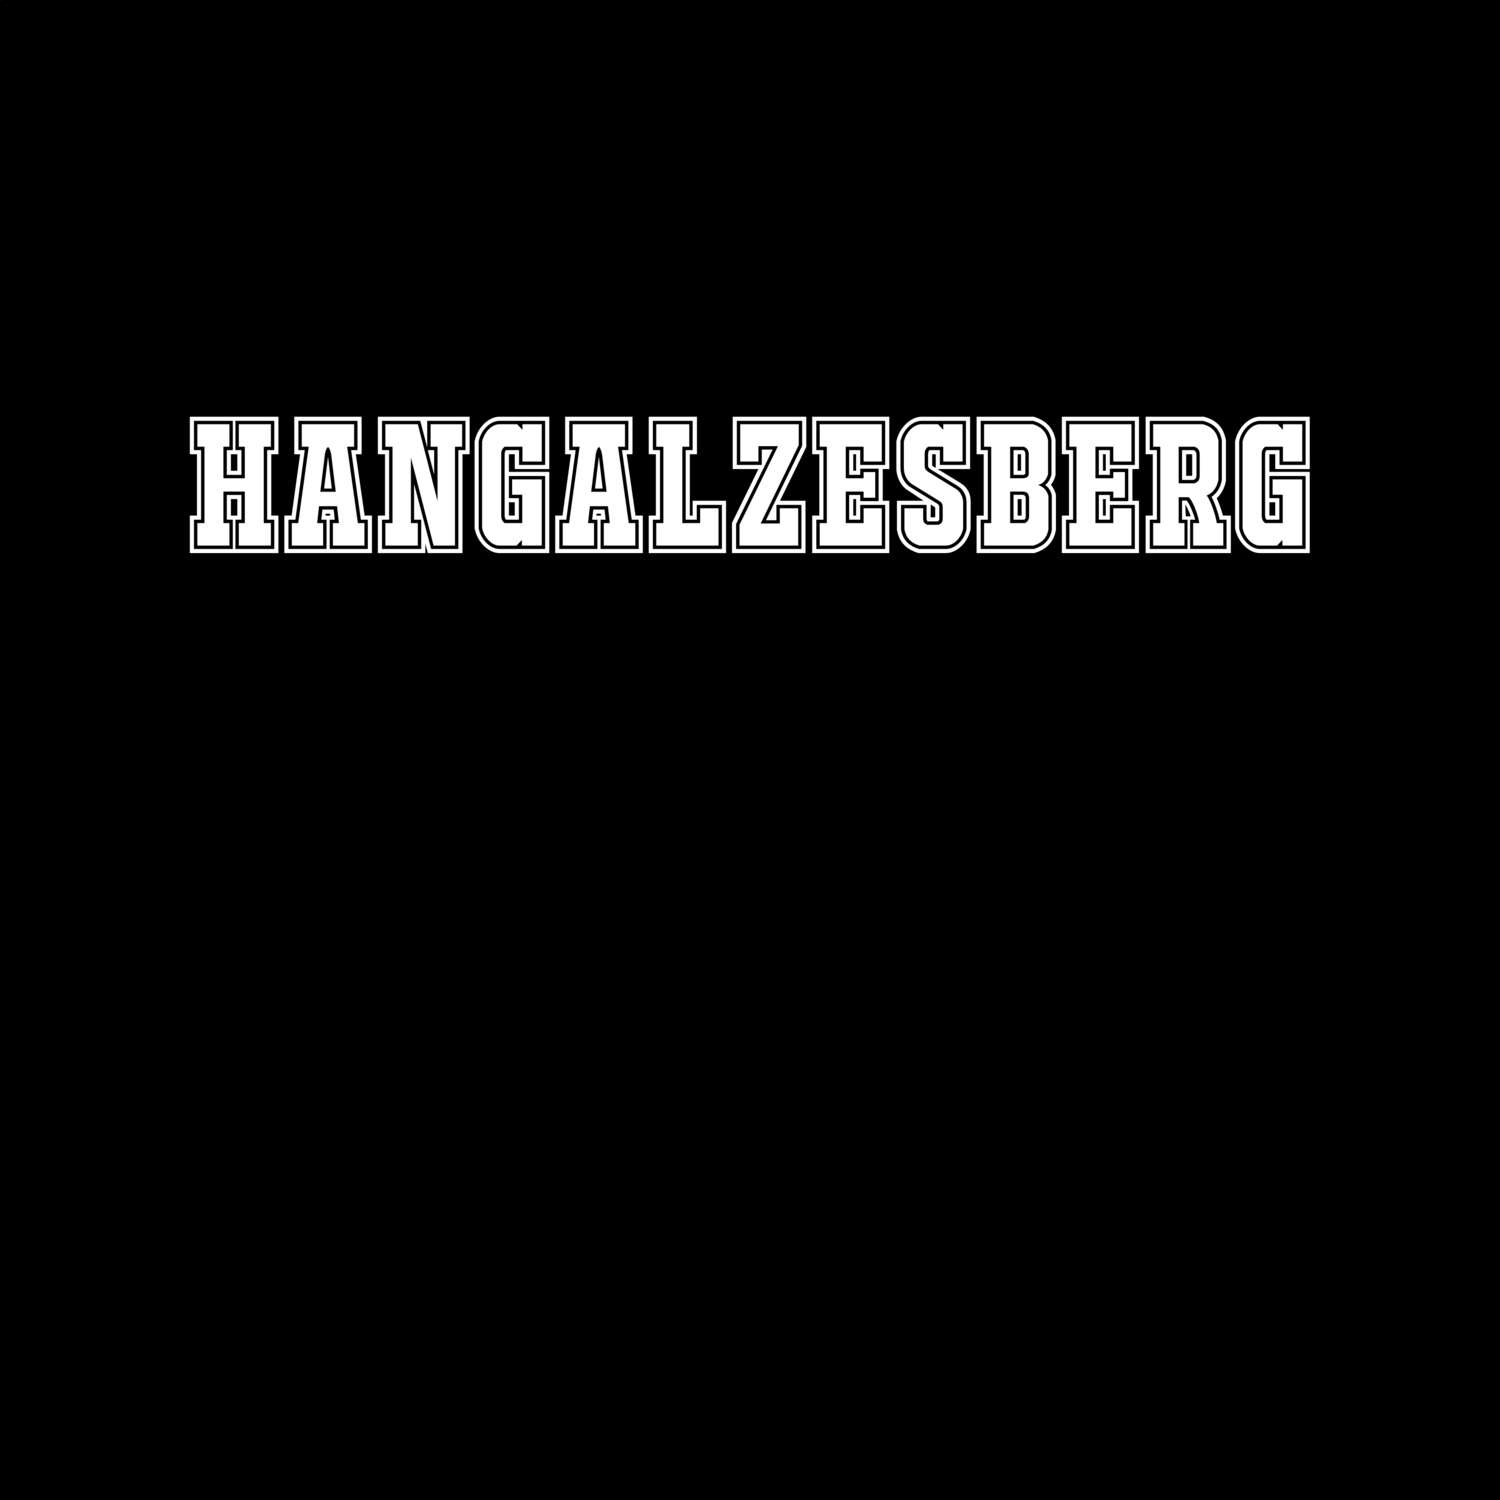 Hangalzesberg T-Shirt »Classic«